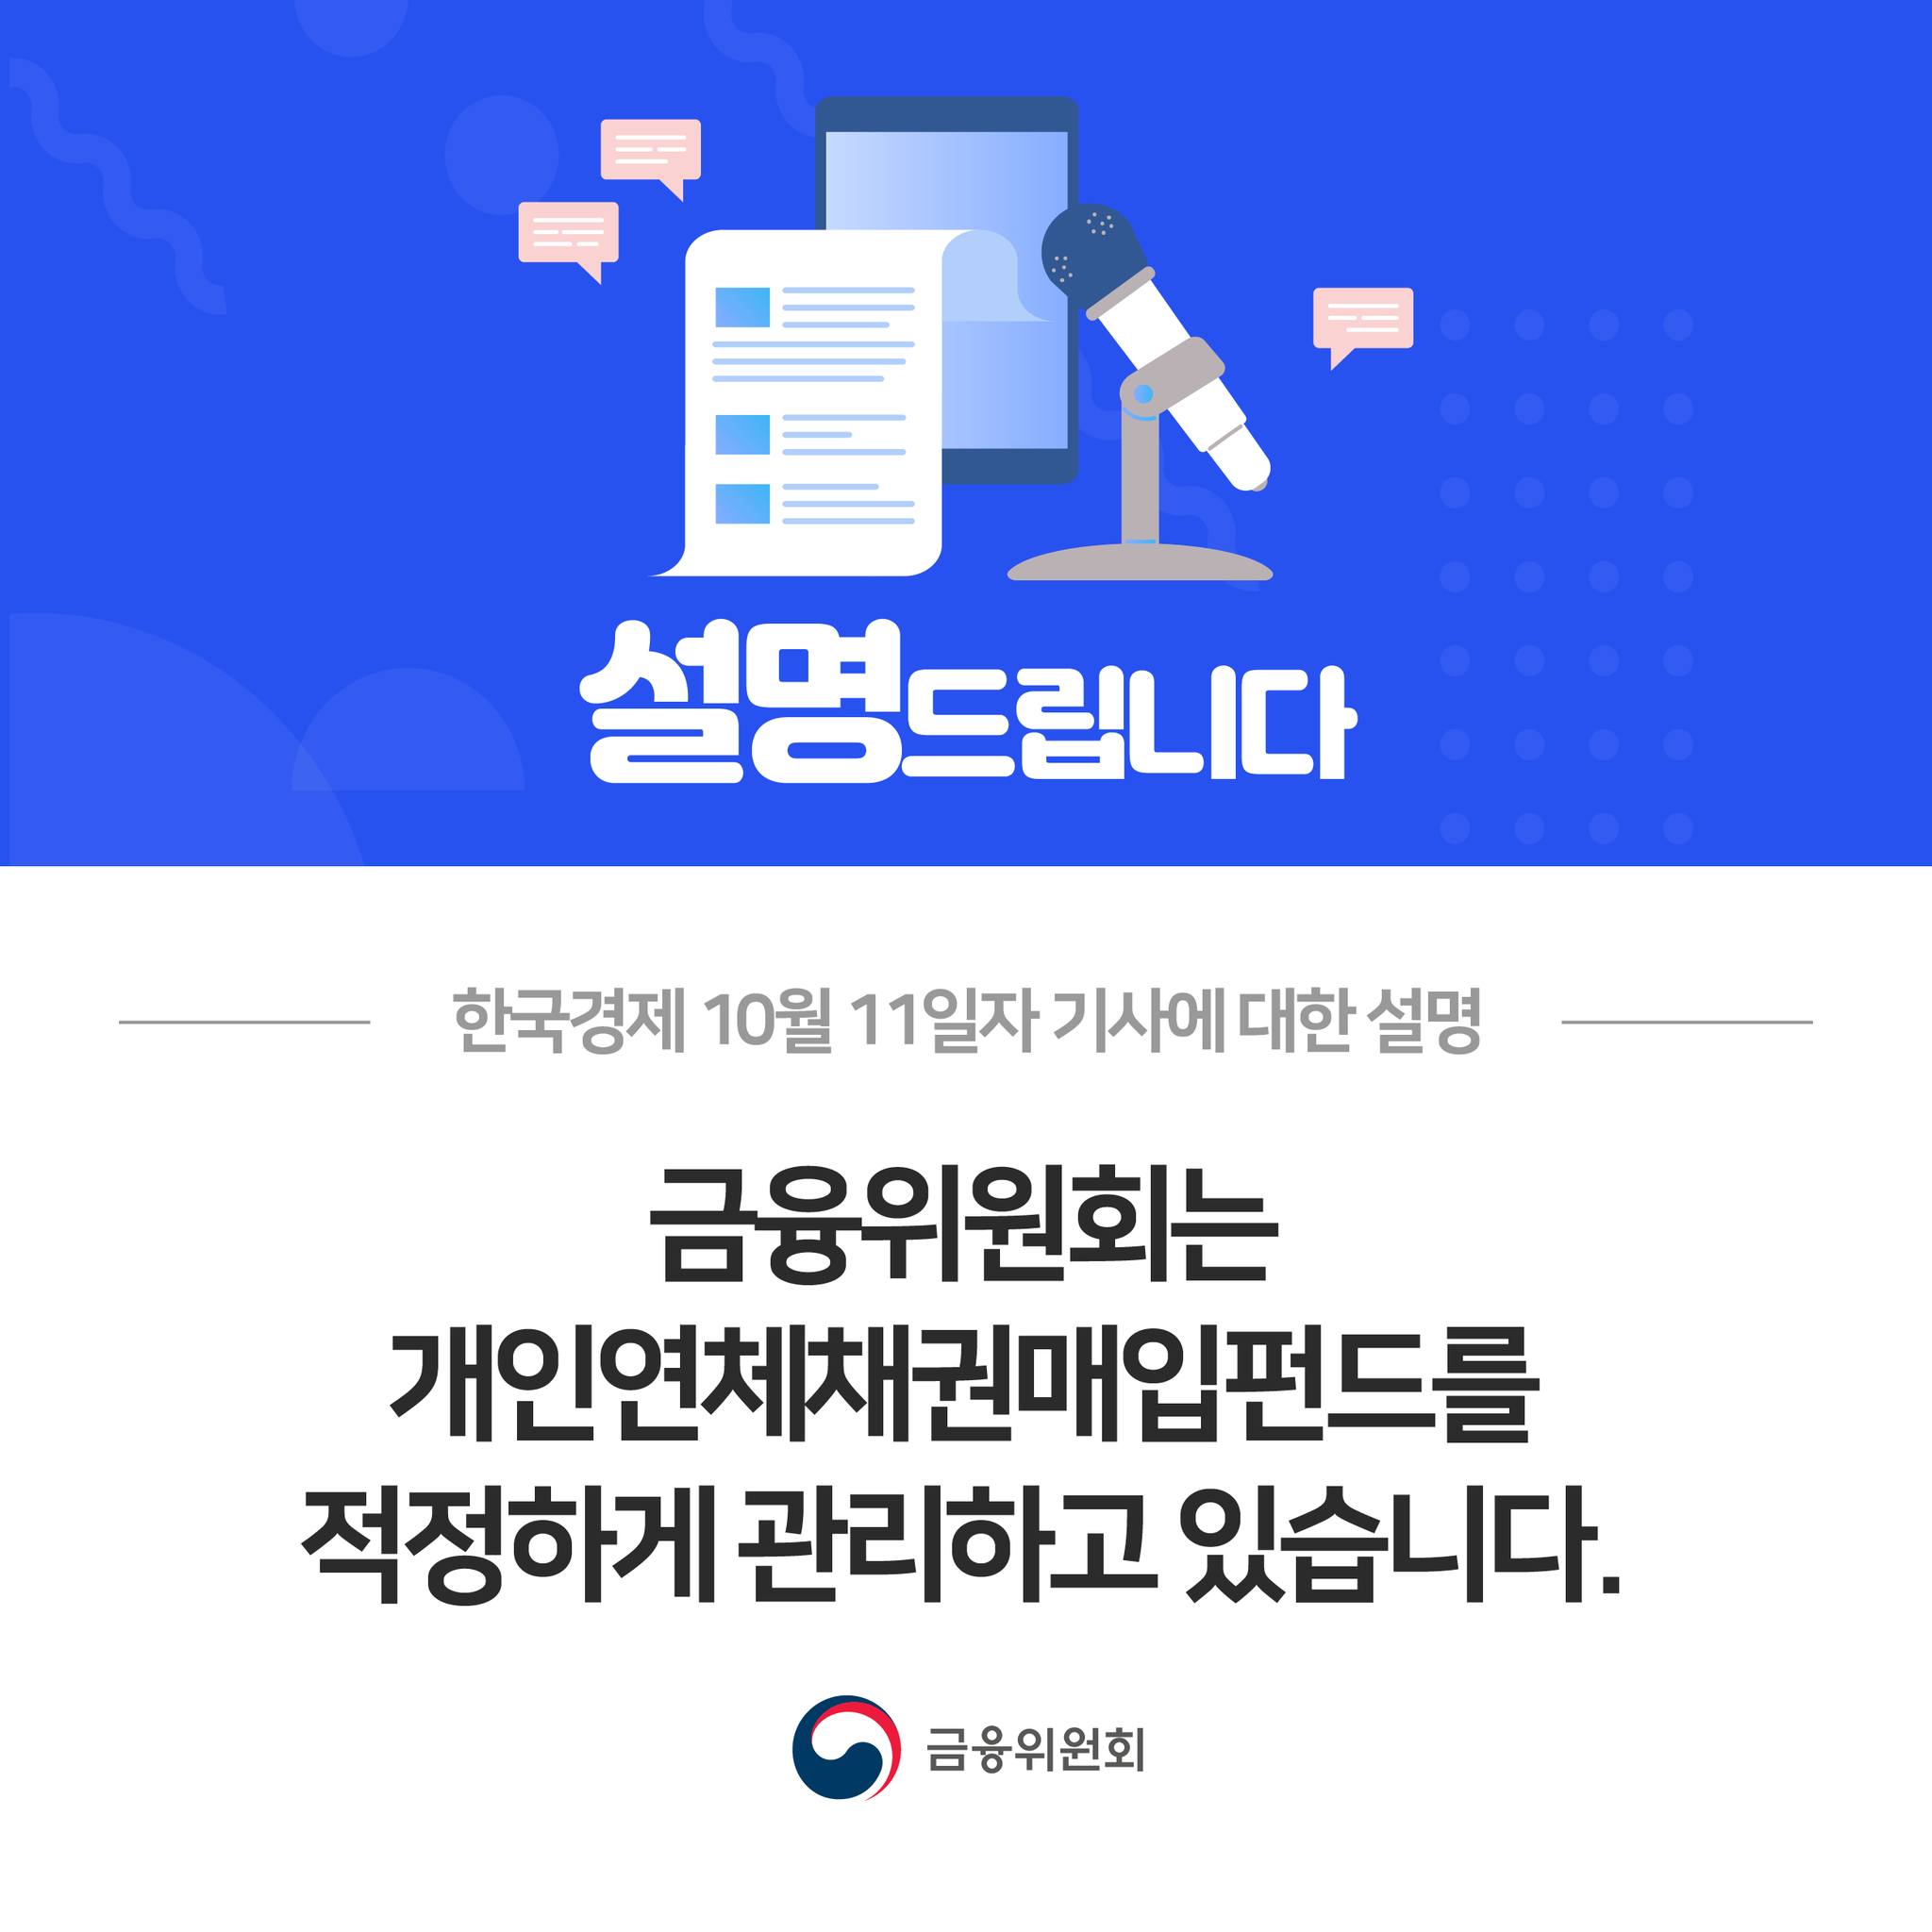 금융위원회는 개인연체채권매입펀드를 적정하게 관리하고 있습니다. 한국경제 10월 11일자 기사에 대한 설명